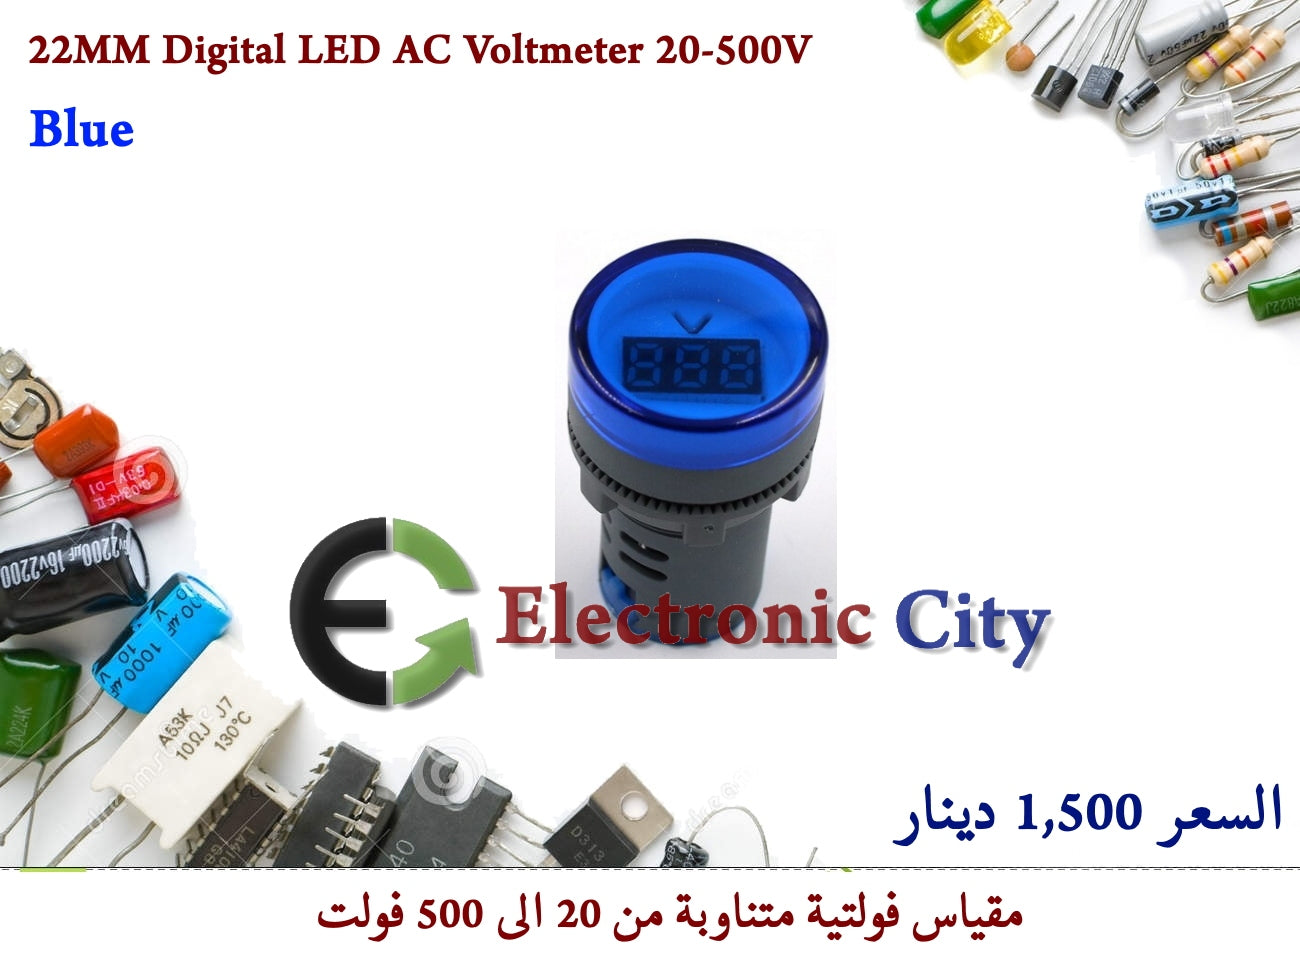 22MM Digital LED AC Voltmeter 20-500V Blue